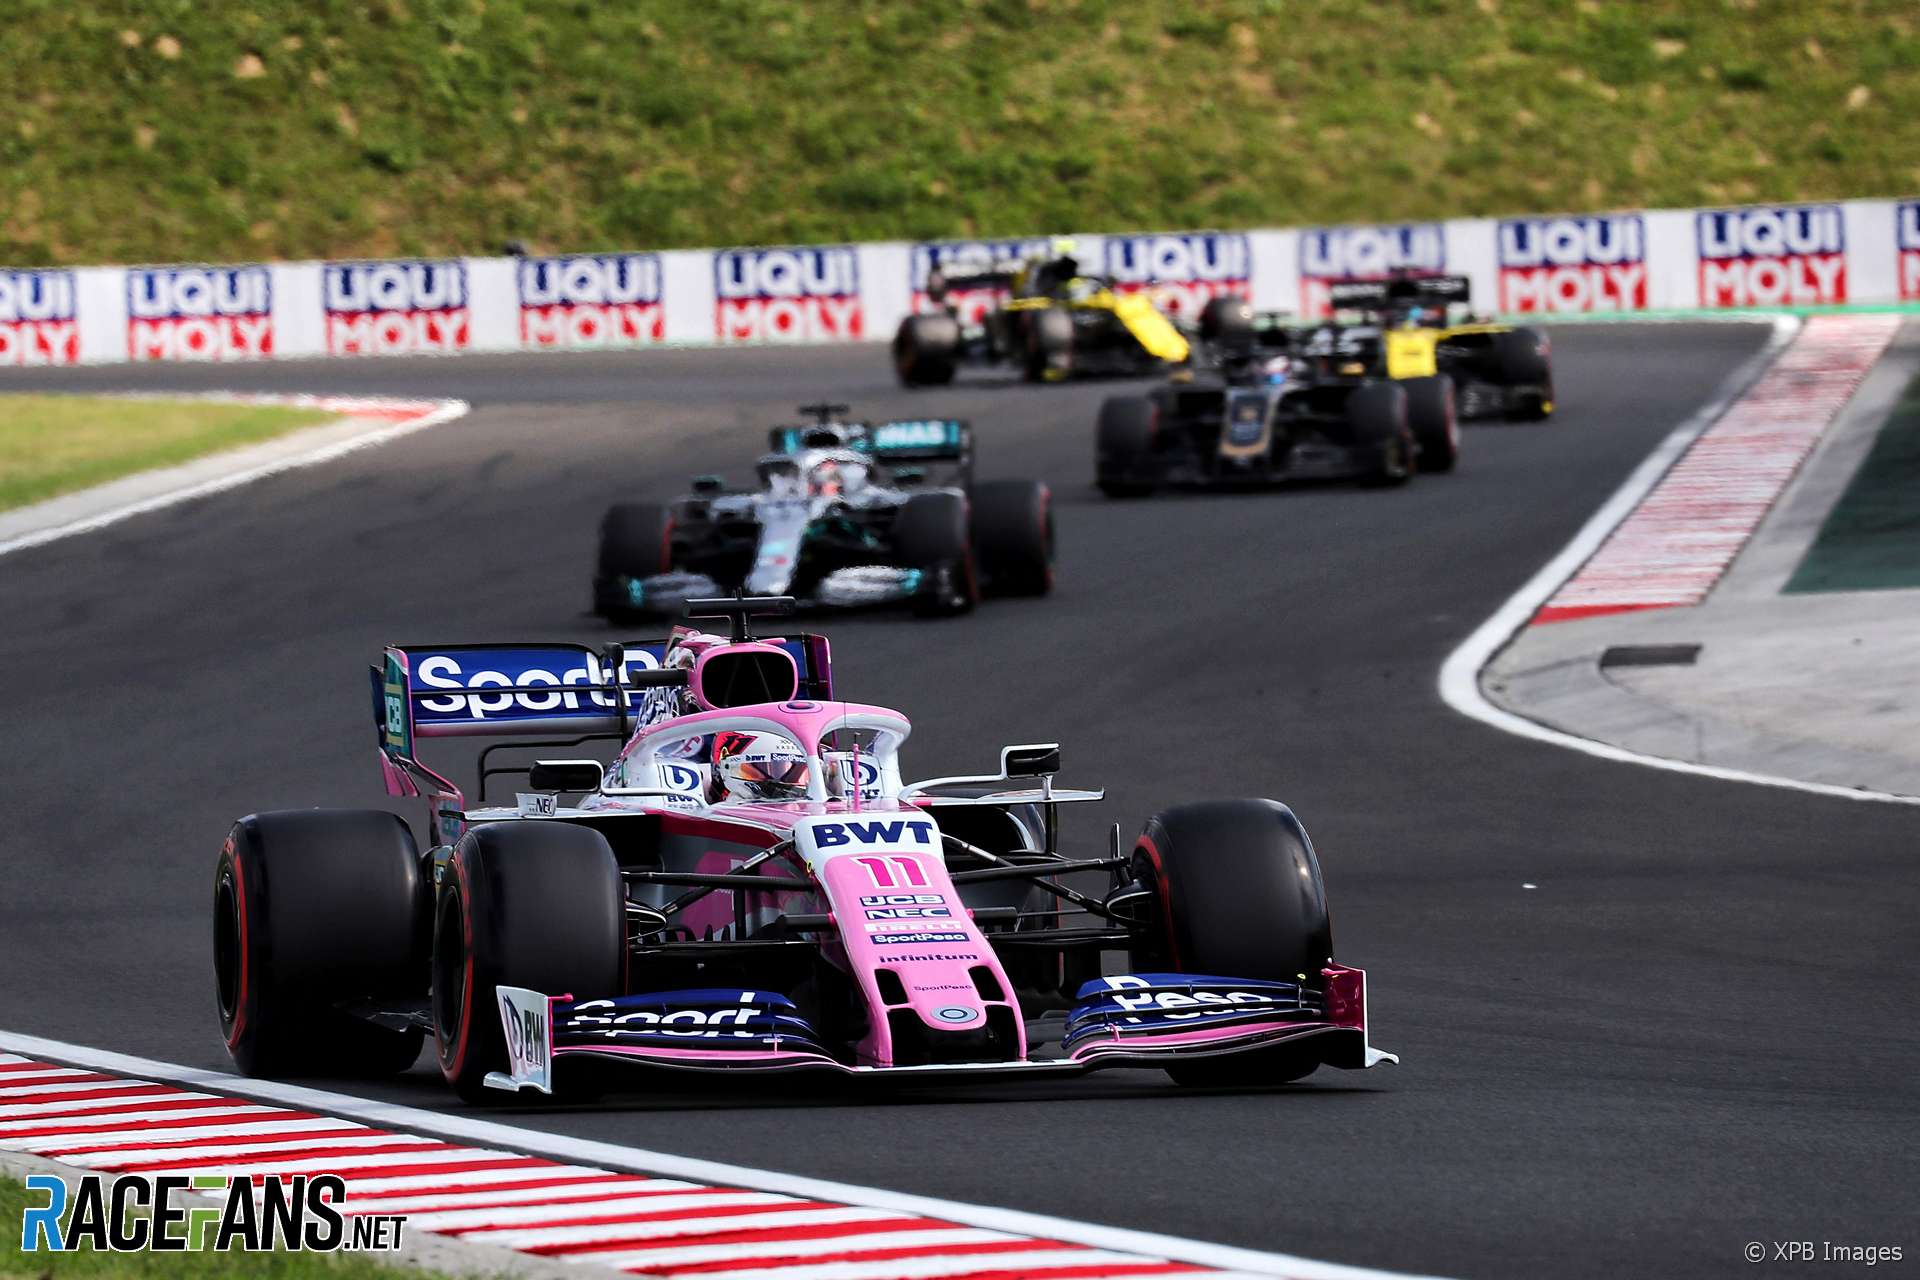 Sergio Perez, Racing Point, Hungaroring, 2019